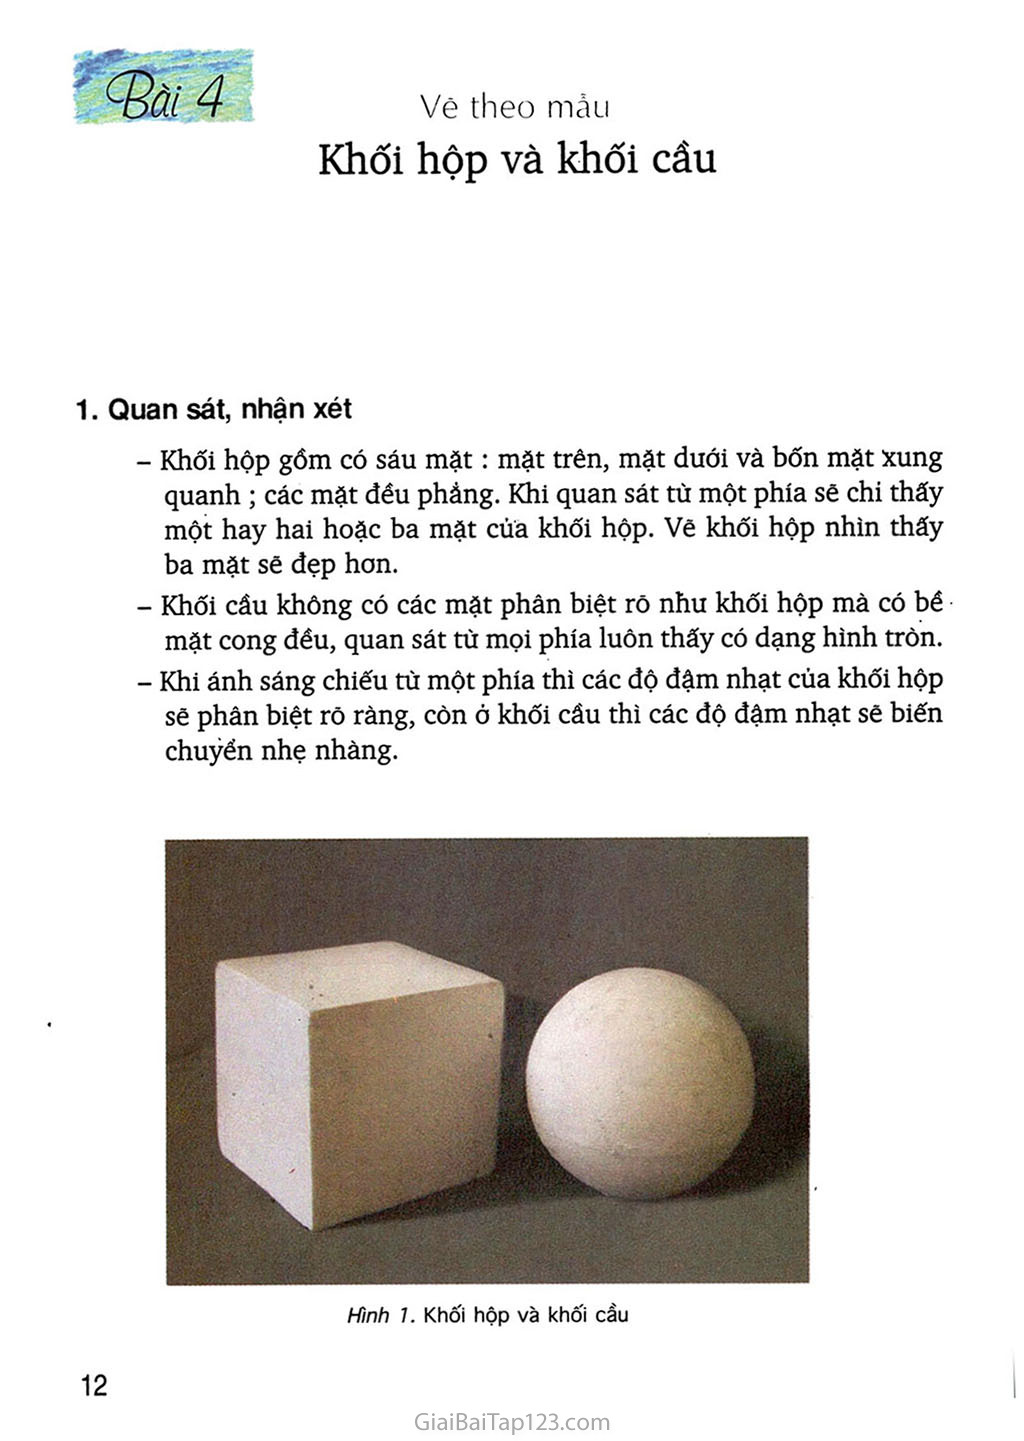 Học cách vẽ hình khối lớp 5 đơn giản và dễ hiểu tại nhà